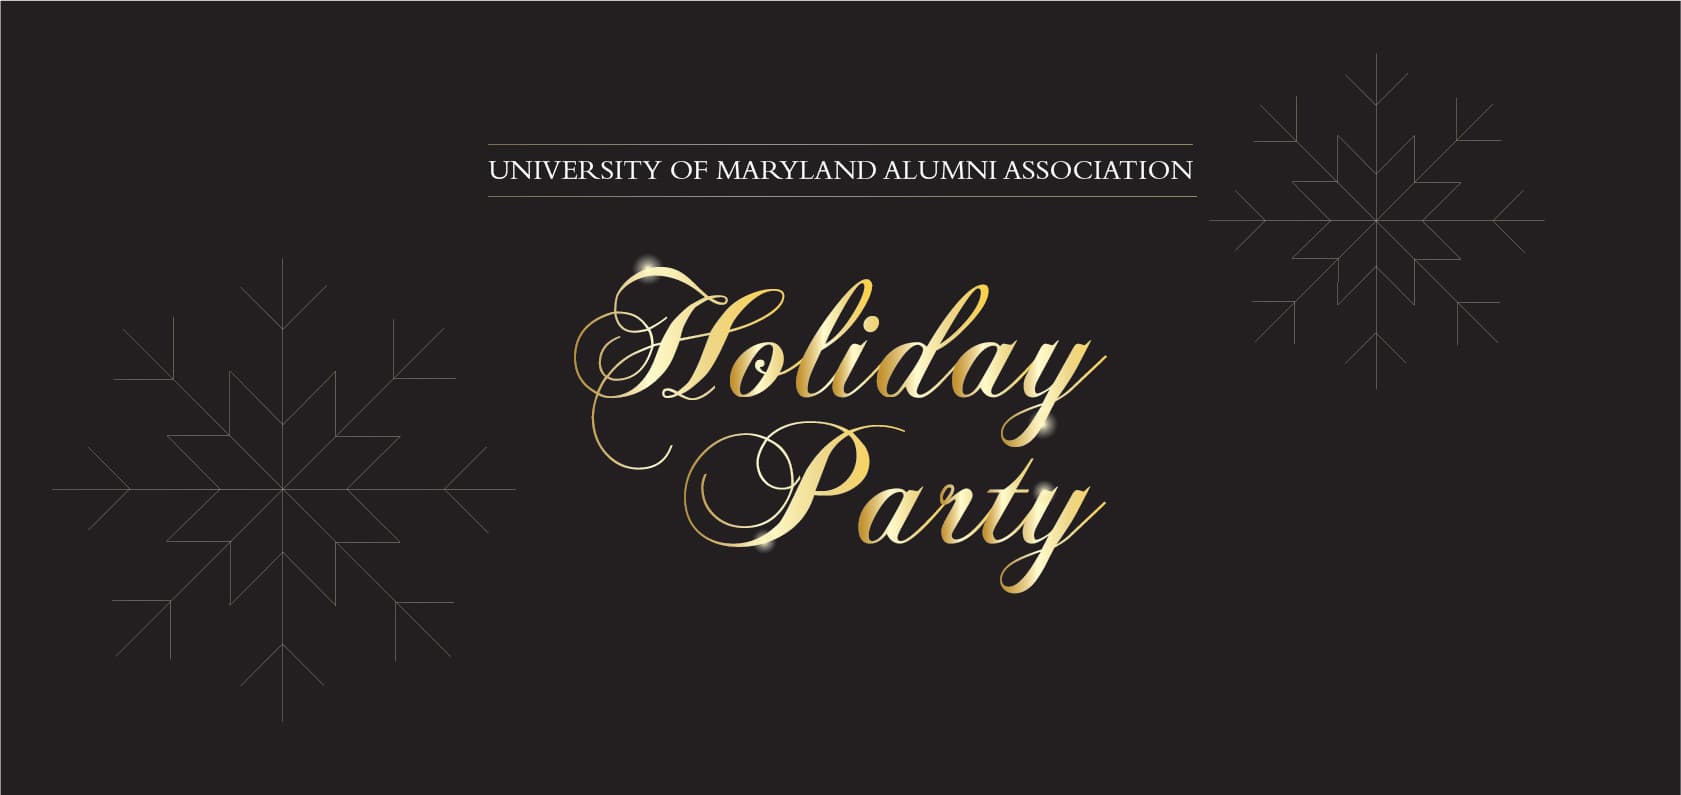 University of Maryland Alumni Association Holiday Party